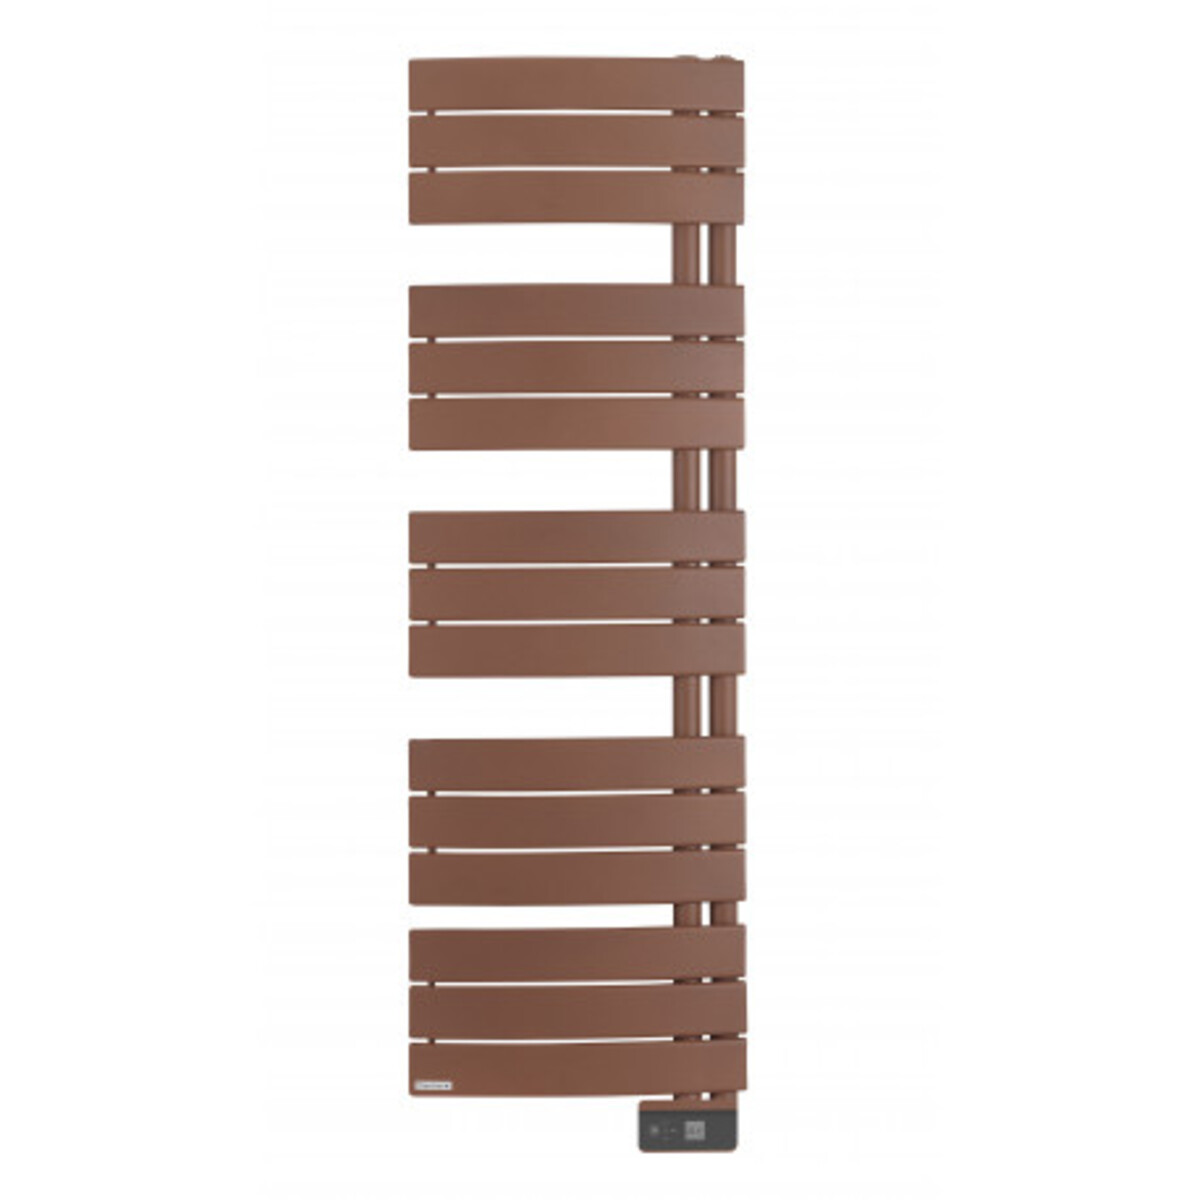 Sèche-serviettes - allure  classique etroit - sans soufflerie - thermor 750 w brun terracotta